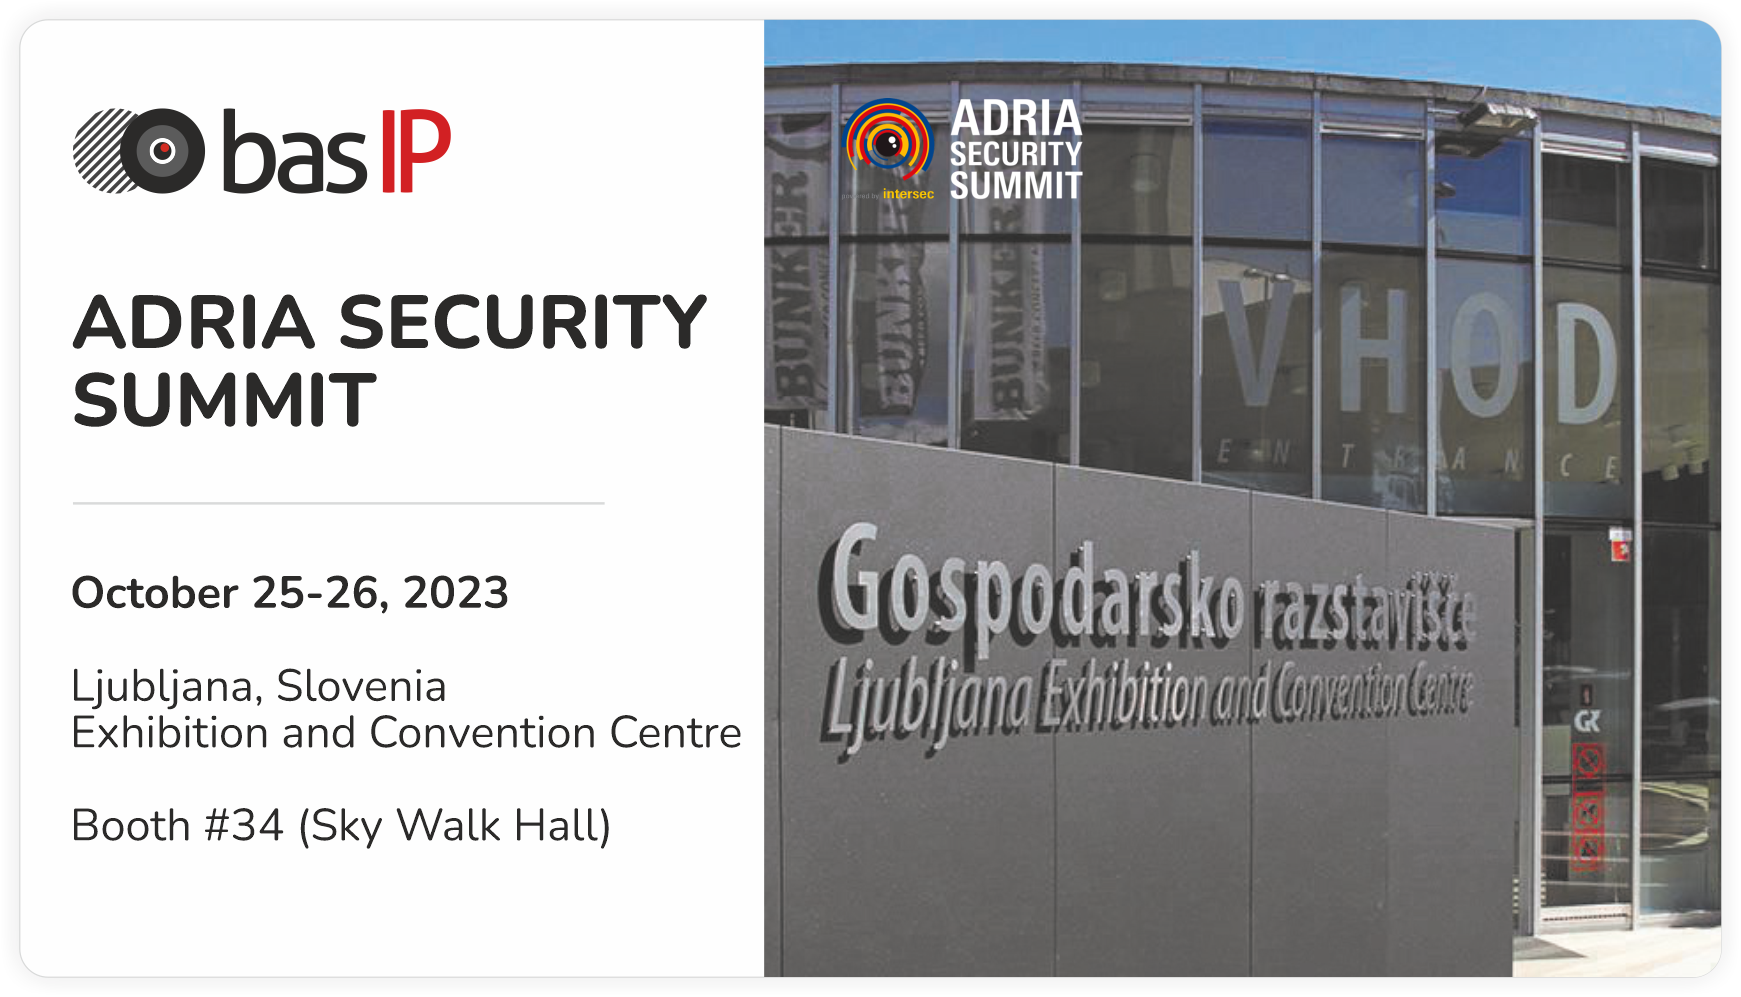 BAS-IP at Adria Security Summit 2023 - BAS-IP